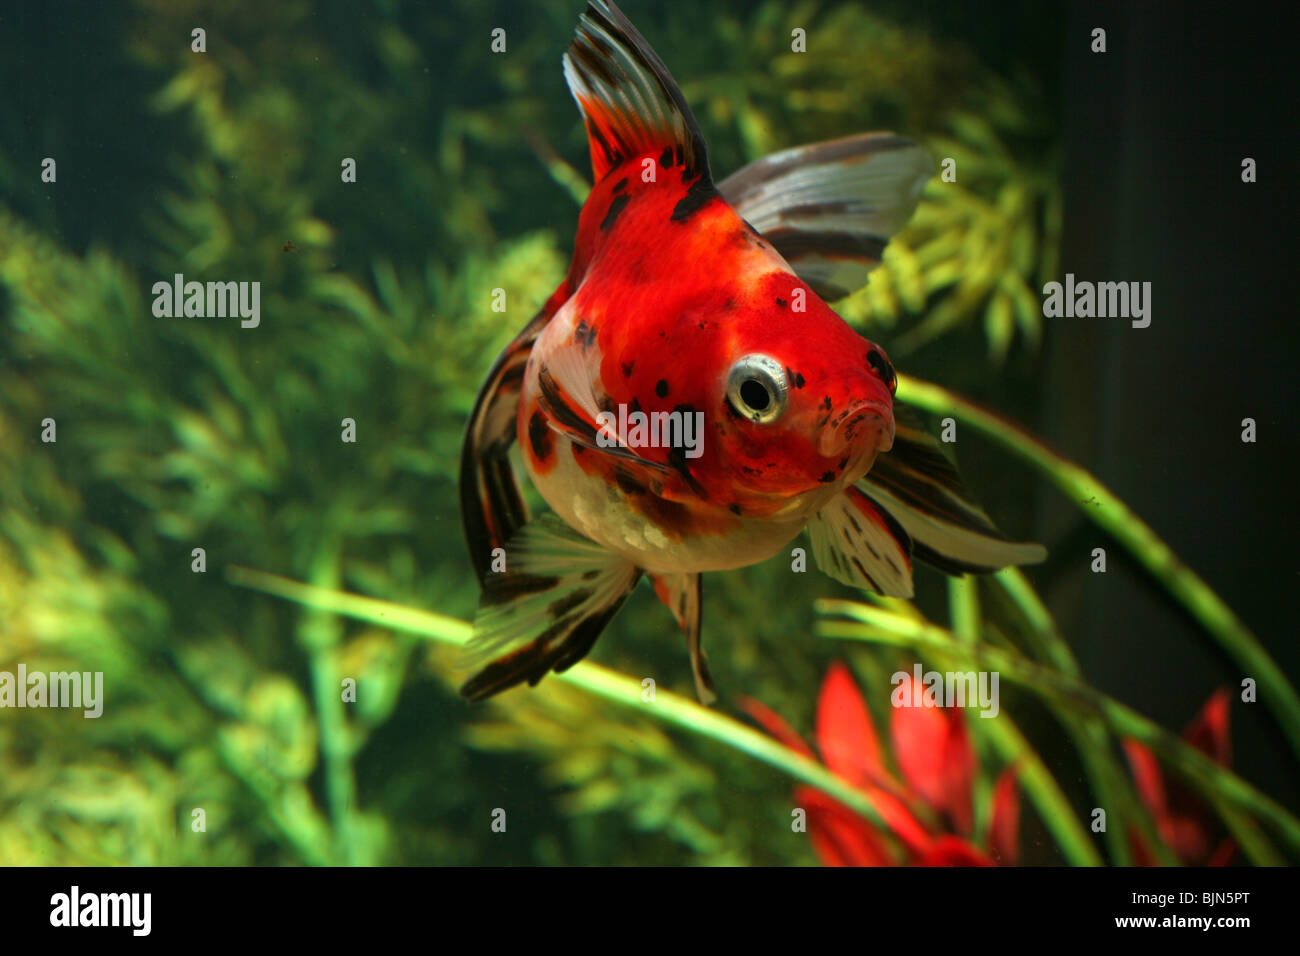 Fantail Goldfish in Aquarium. Stock Photo